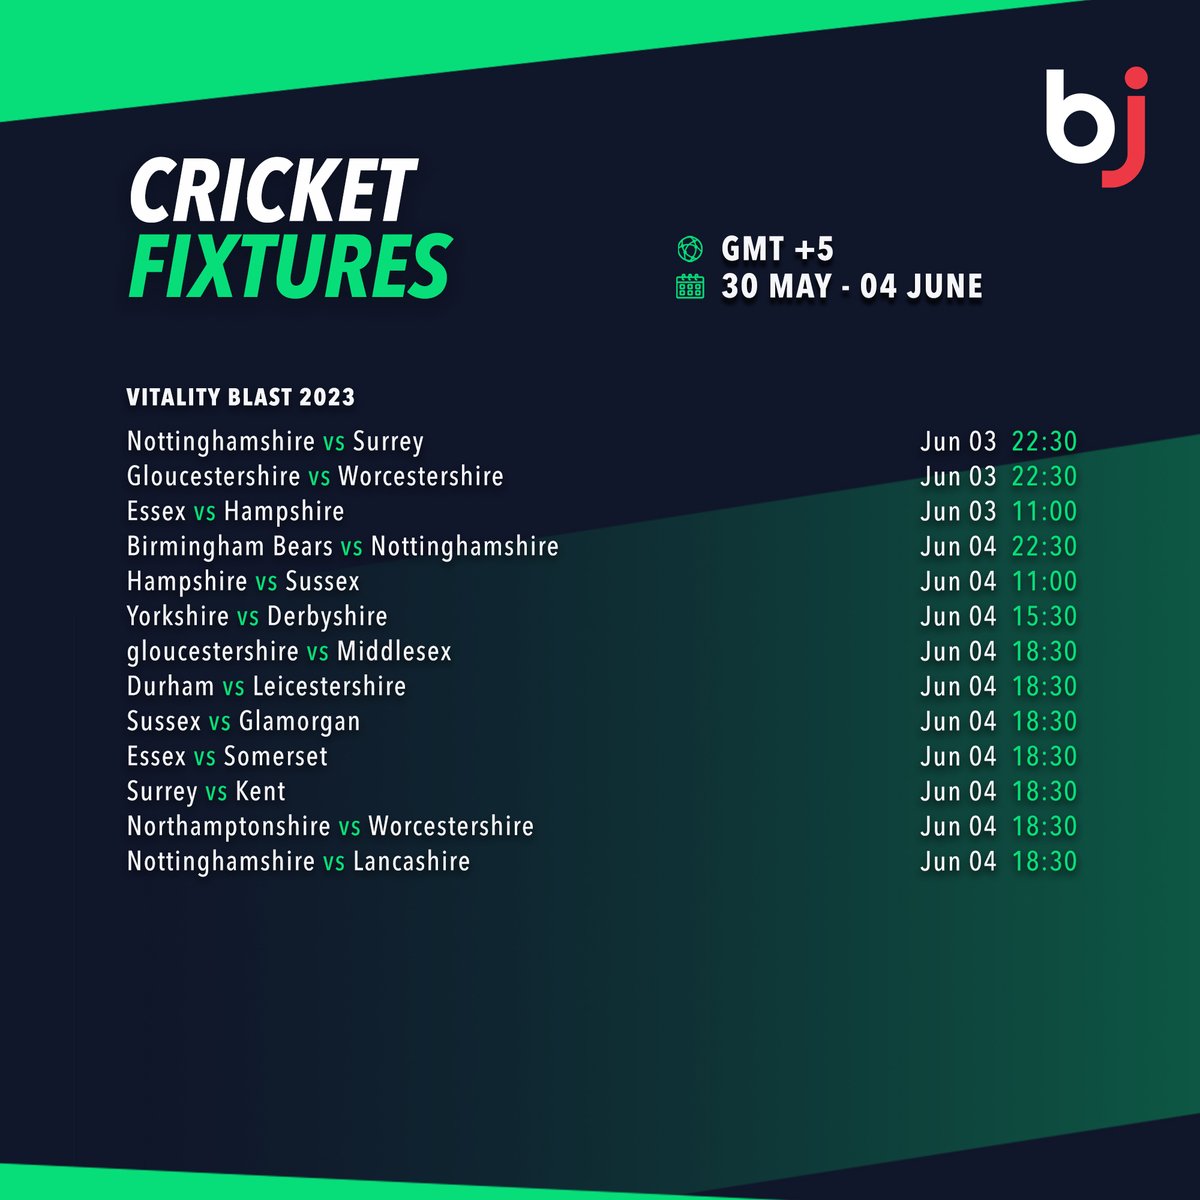 صرف Baji پر ایک نظرمیں سیزن کے اگلے ہفتے کے آخری چار میچوں اور وٹیلیٹی بلاسٹ لیگ میچ شیڈول دیکھیں!!

  💥 ابھی BjBaji5.com ممبر کے طور پر رجسٹر ہوں!!💥

#Baji #BJ #Sports #Cricket #Schedule #CricketFixture #VitalityBlast